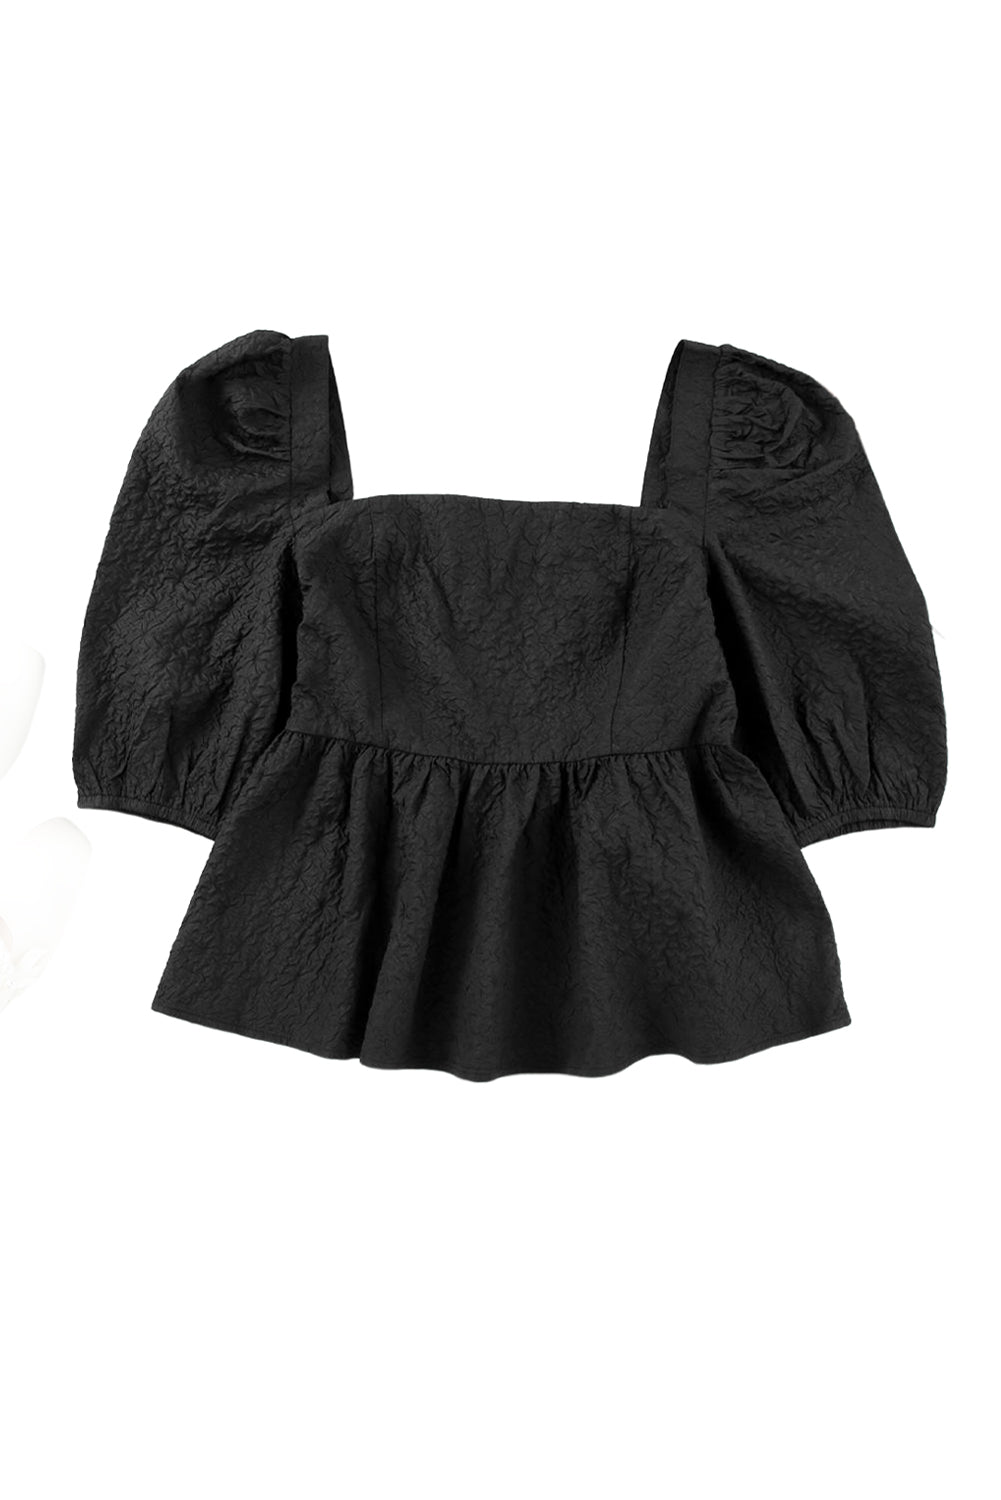 Crna bluza s peplumom i puf rukavima četvrtastog izreza